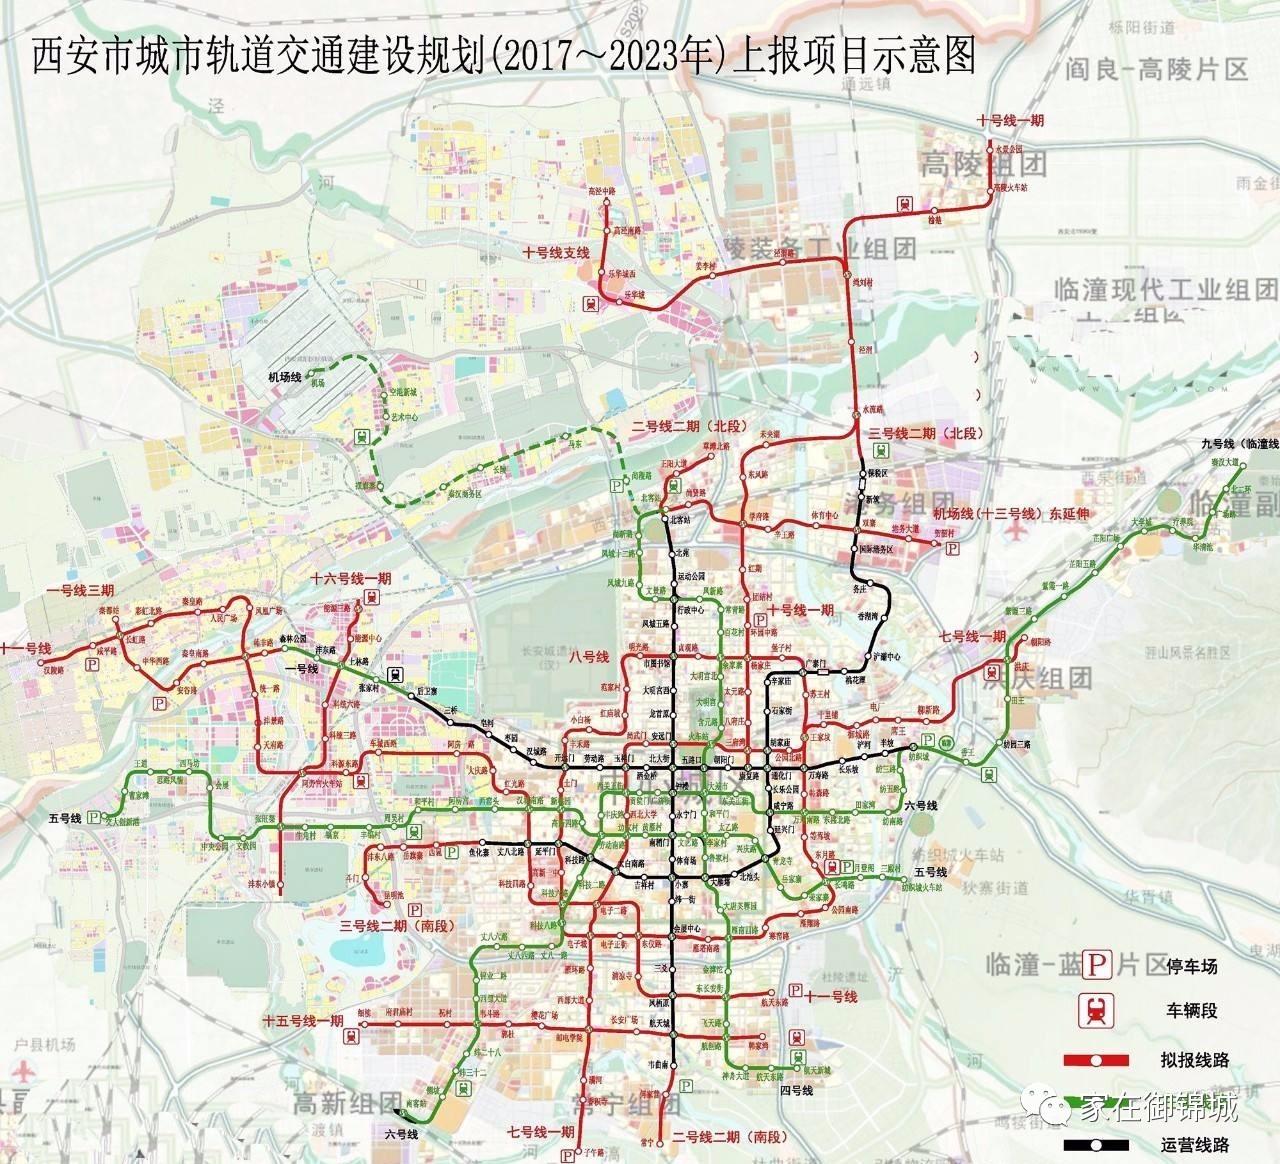 官方资料显示:西安地铁第三期建设规划(2017-2023年)包含有十条线路